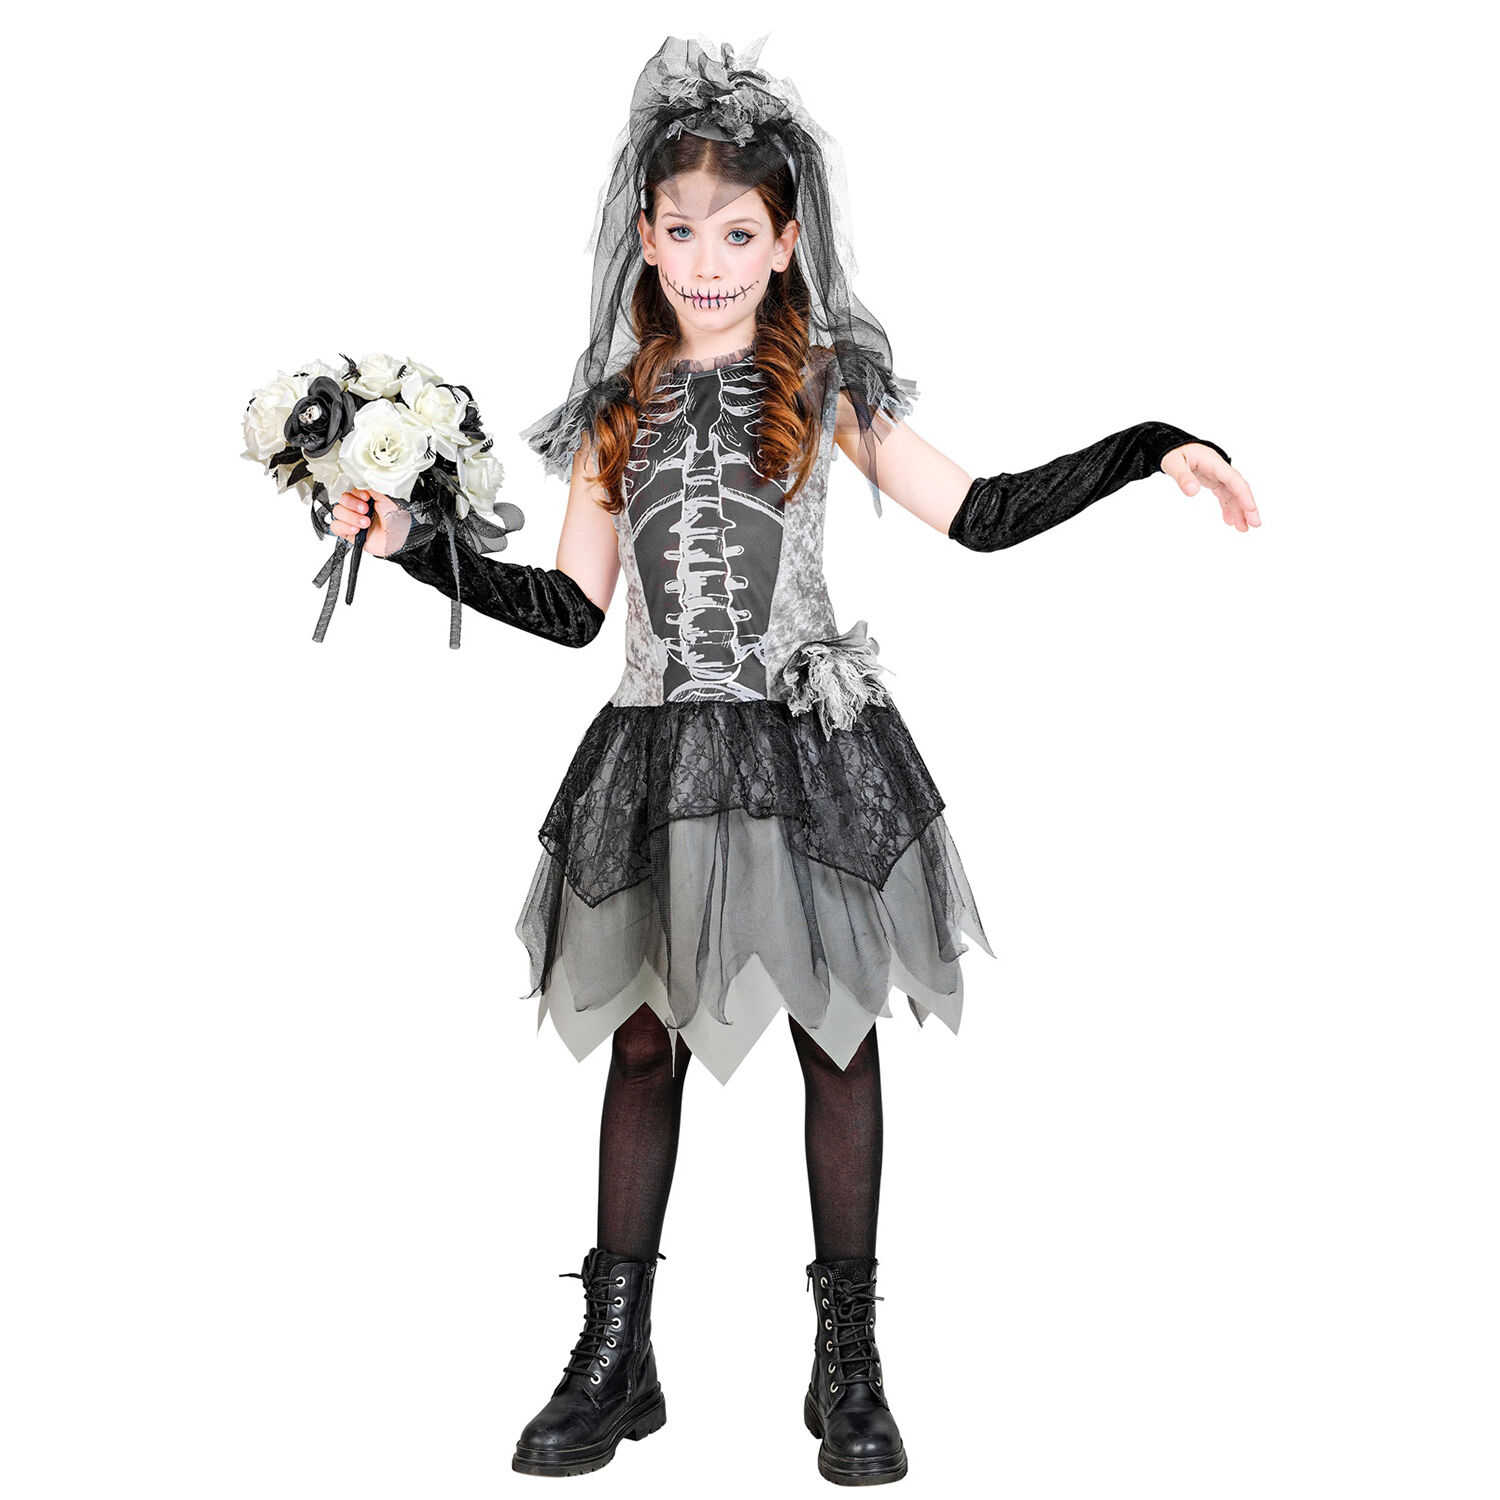 NEU Kinder-Kostm Skelettbraut, mit Kleid, Handschuhen, Brautschleier, Gr. 116 Bild 3